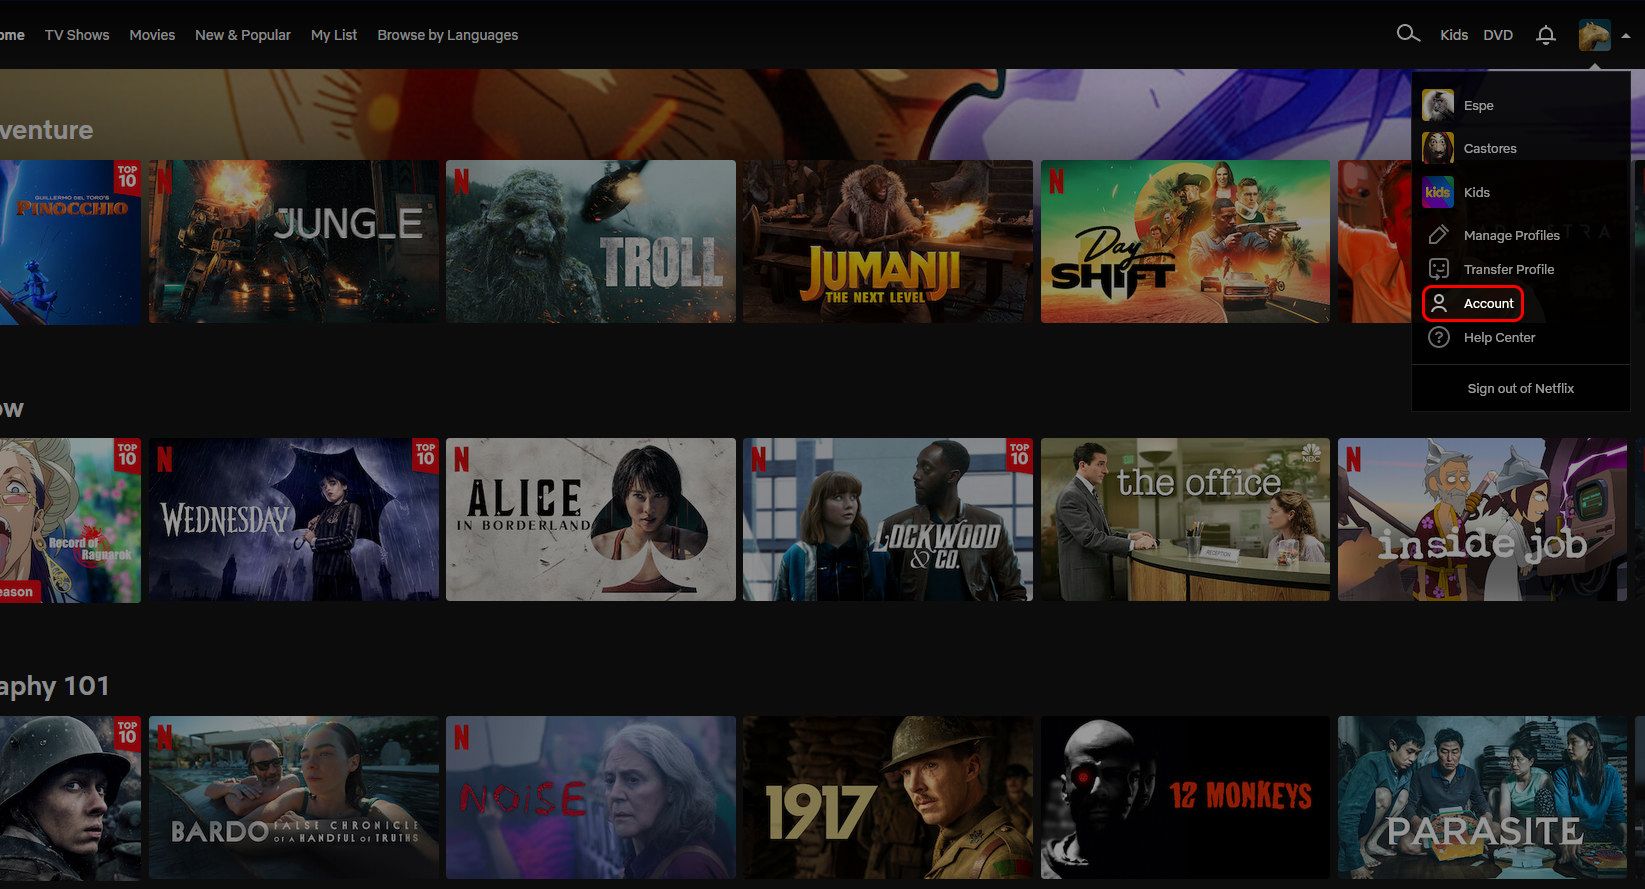 Menu de perfil da tela inicial do navegador Netflix destacando a opção Conta